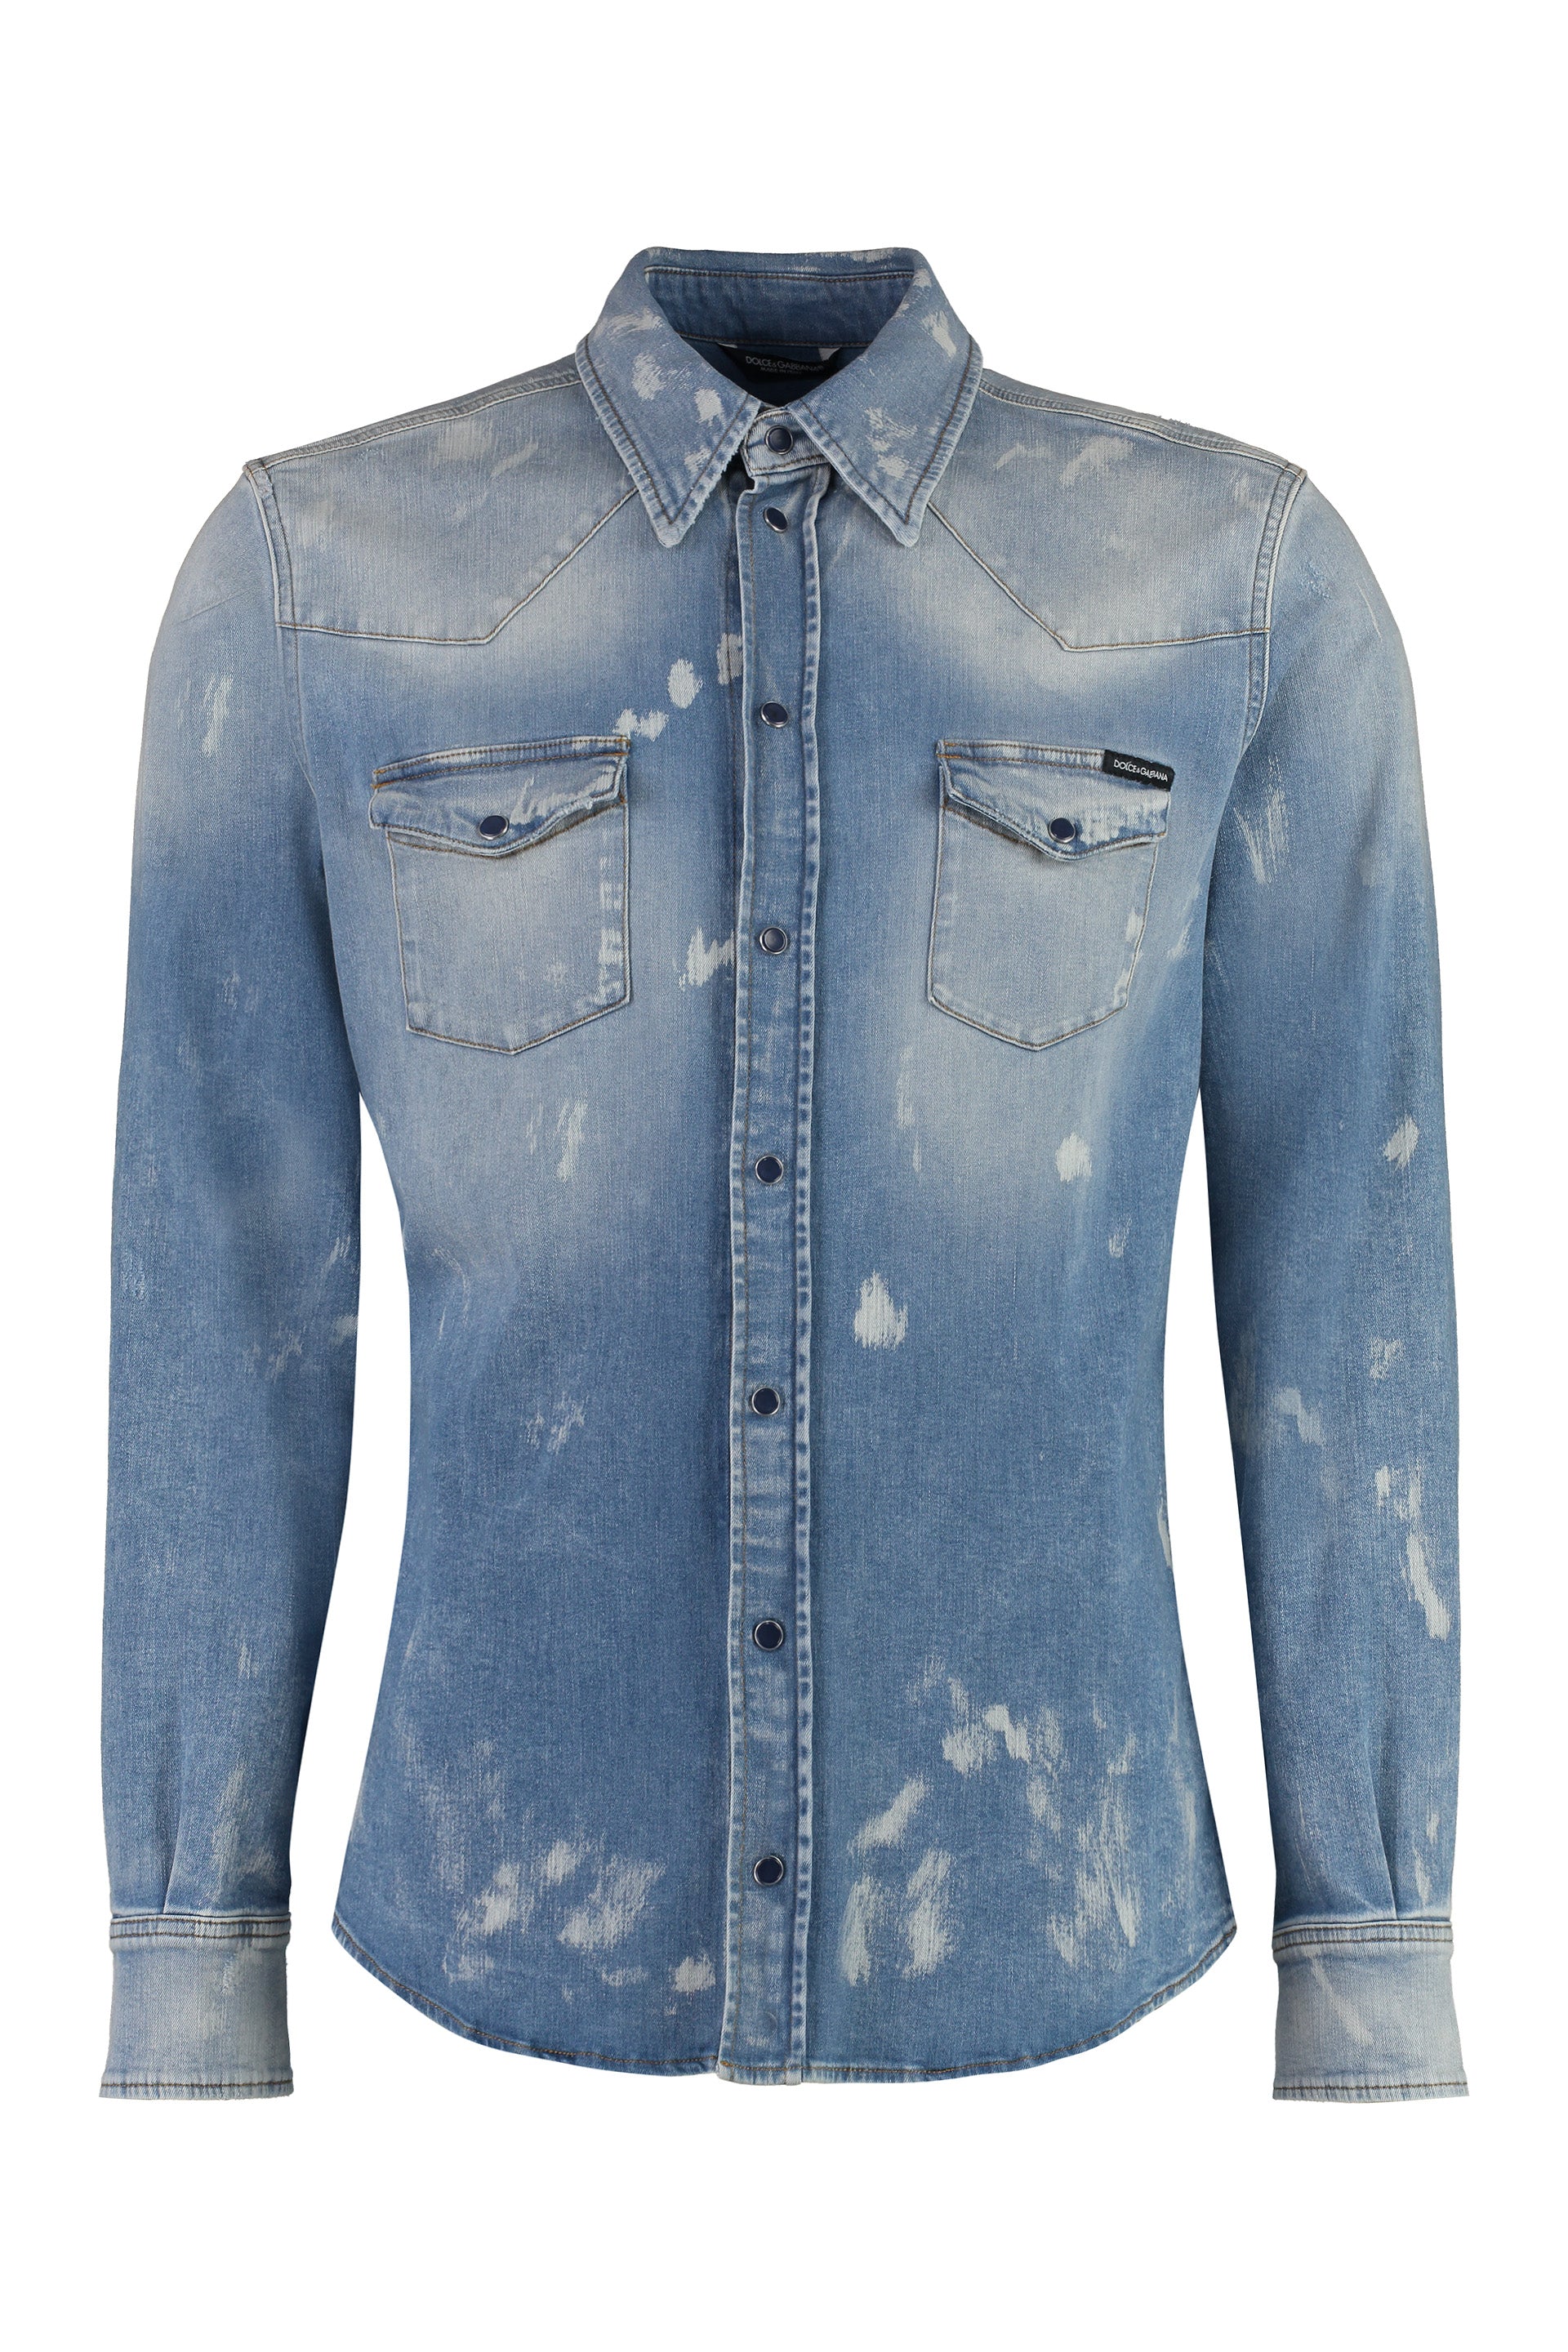 Dolce & Gabbana Men's Paint Splatter Denim Shirt For Fw23